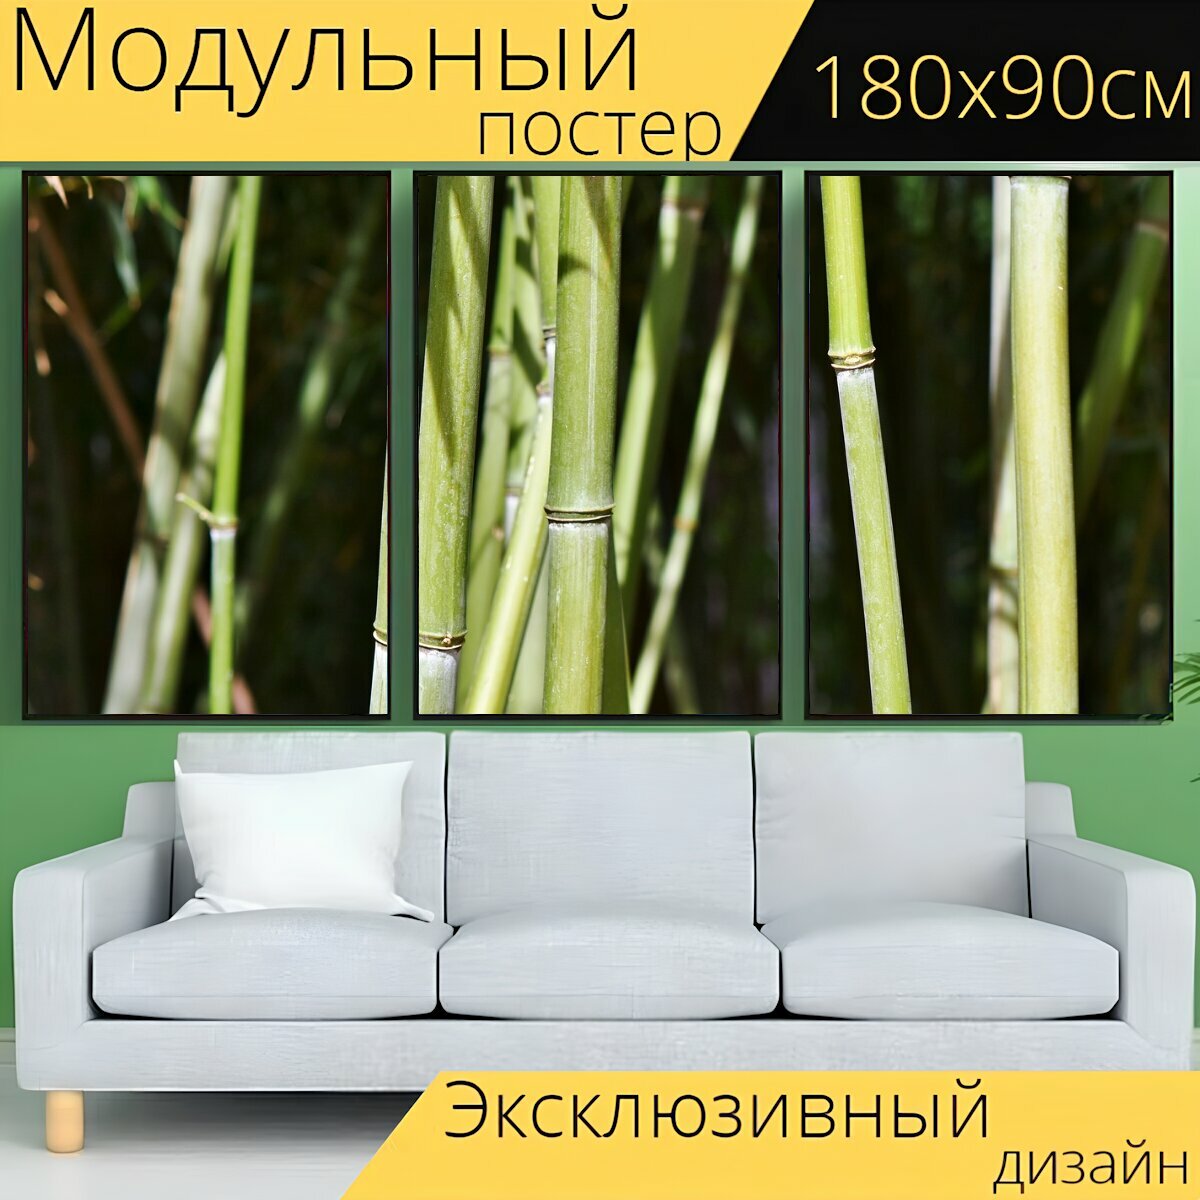 Модульный постер "Бамбук, бамбуковый лес, гигантский бамбук" 180 x 90 см. для интерьера